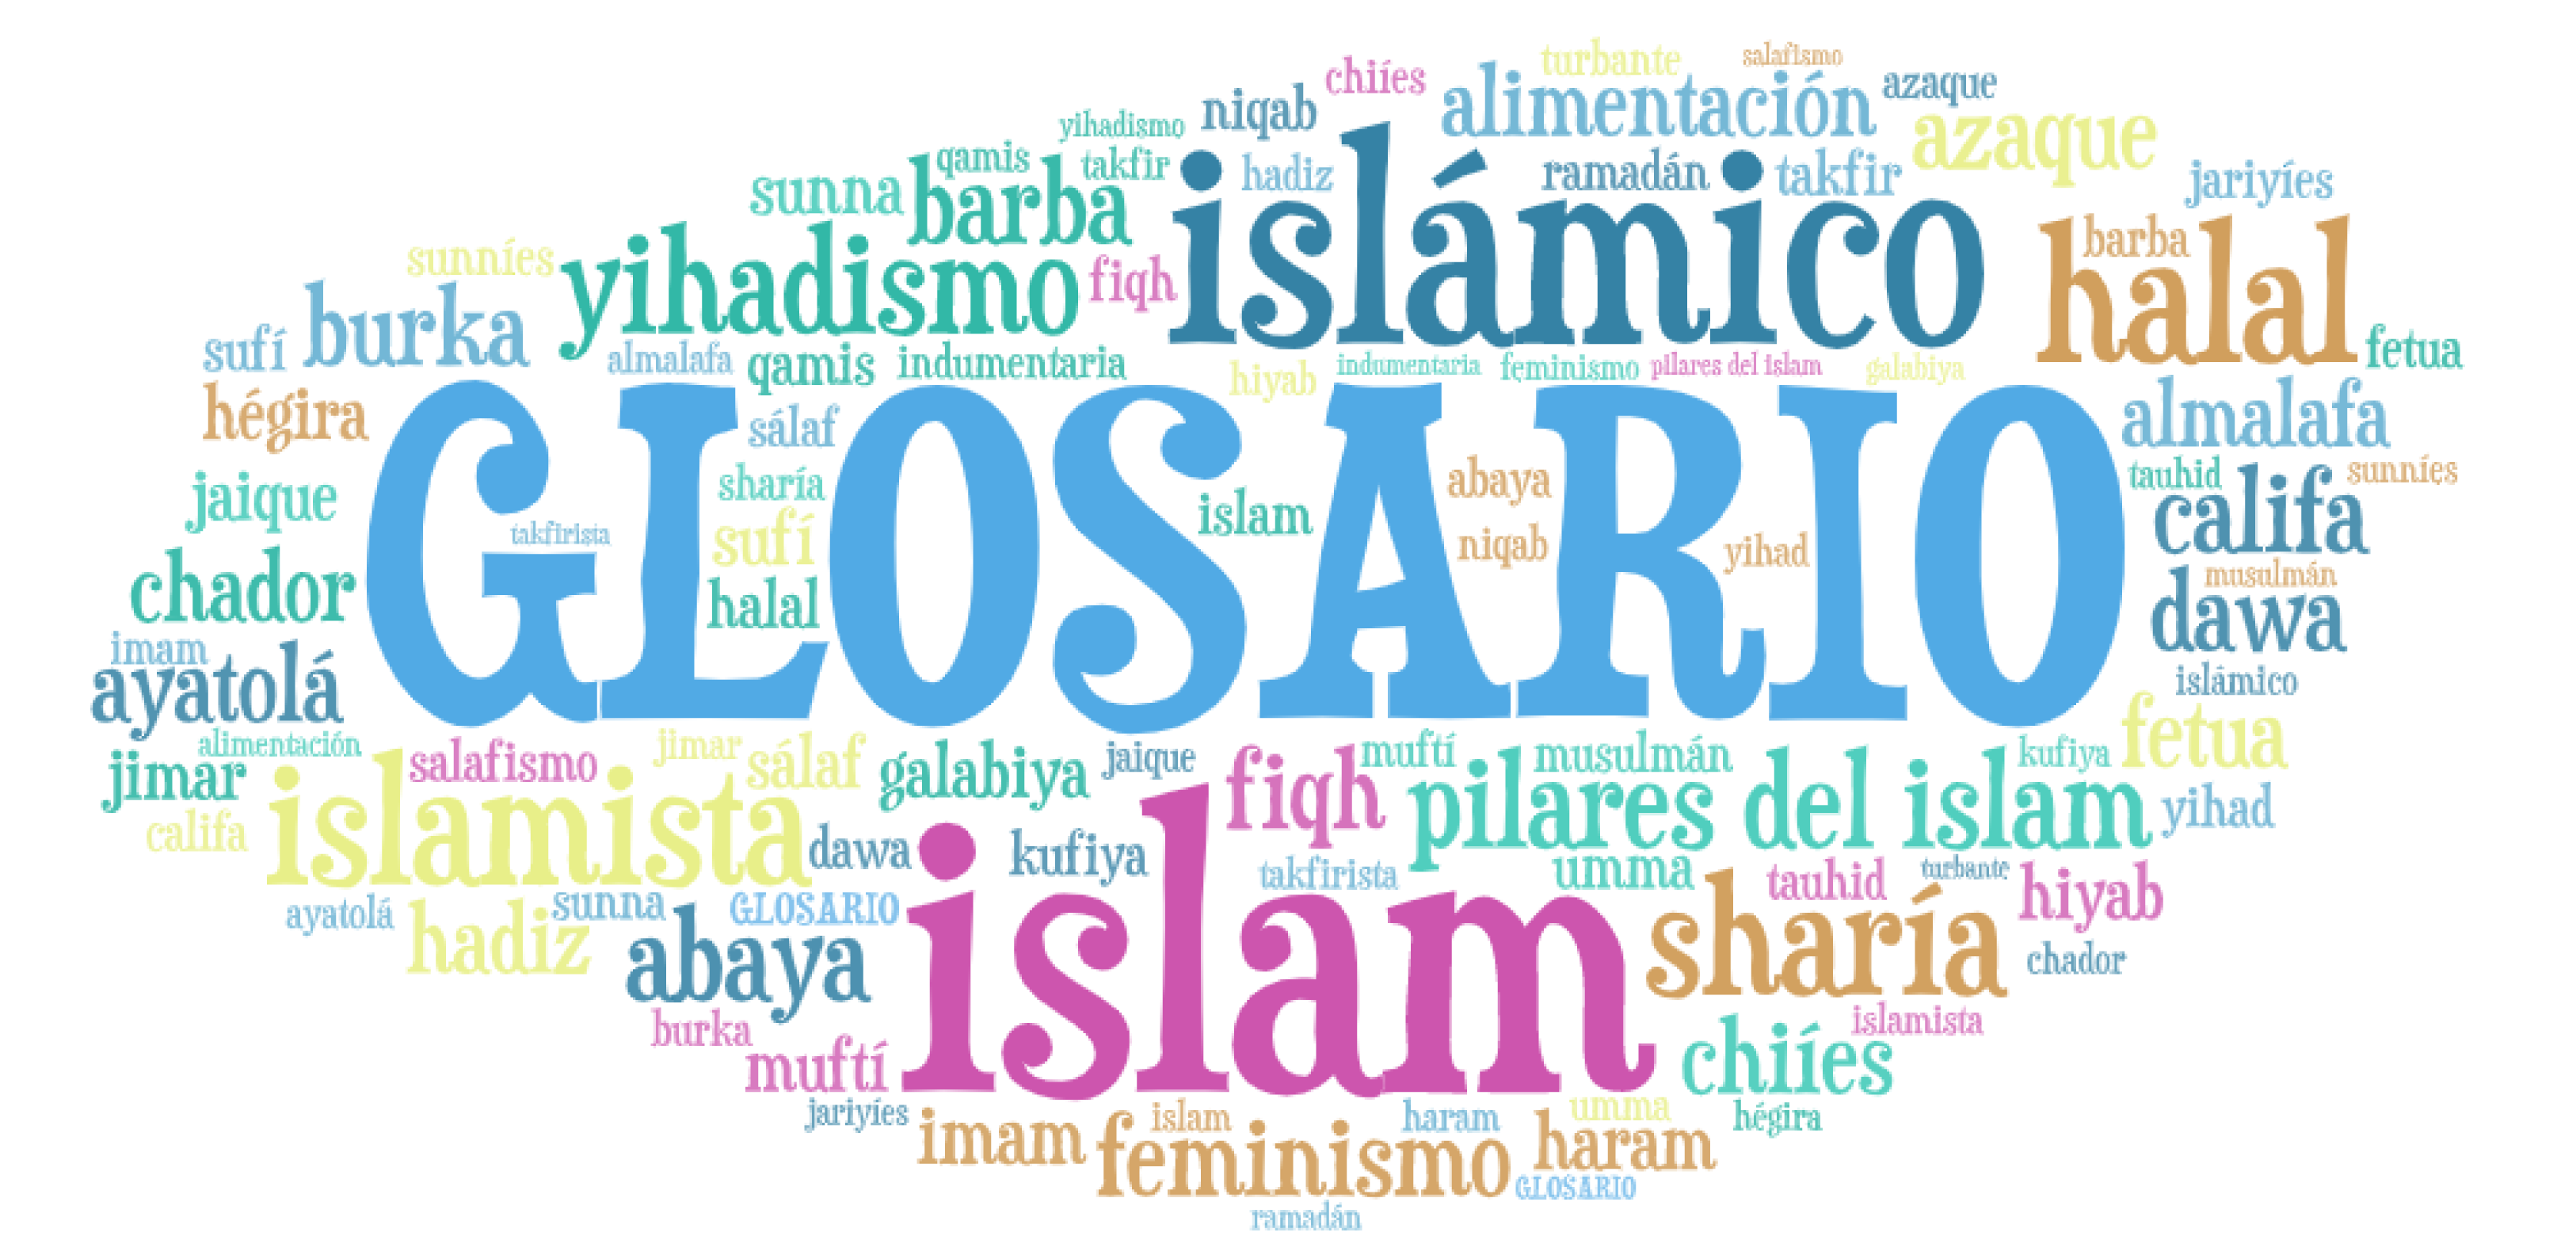 Glosario sobre el islam